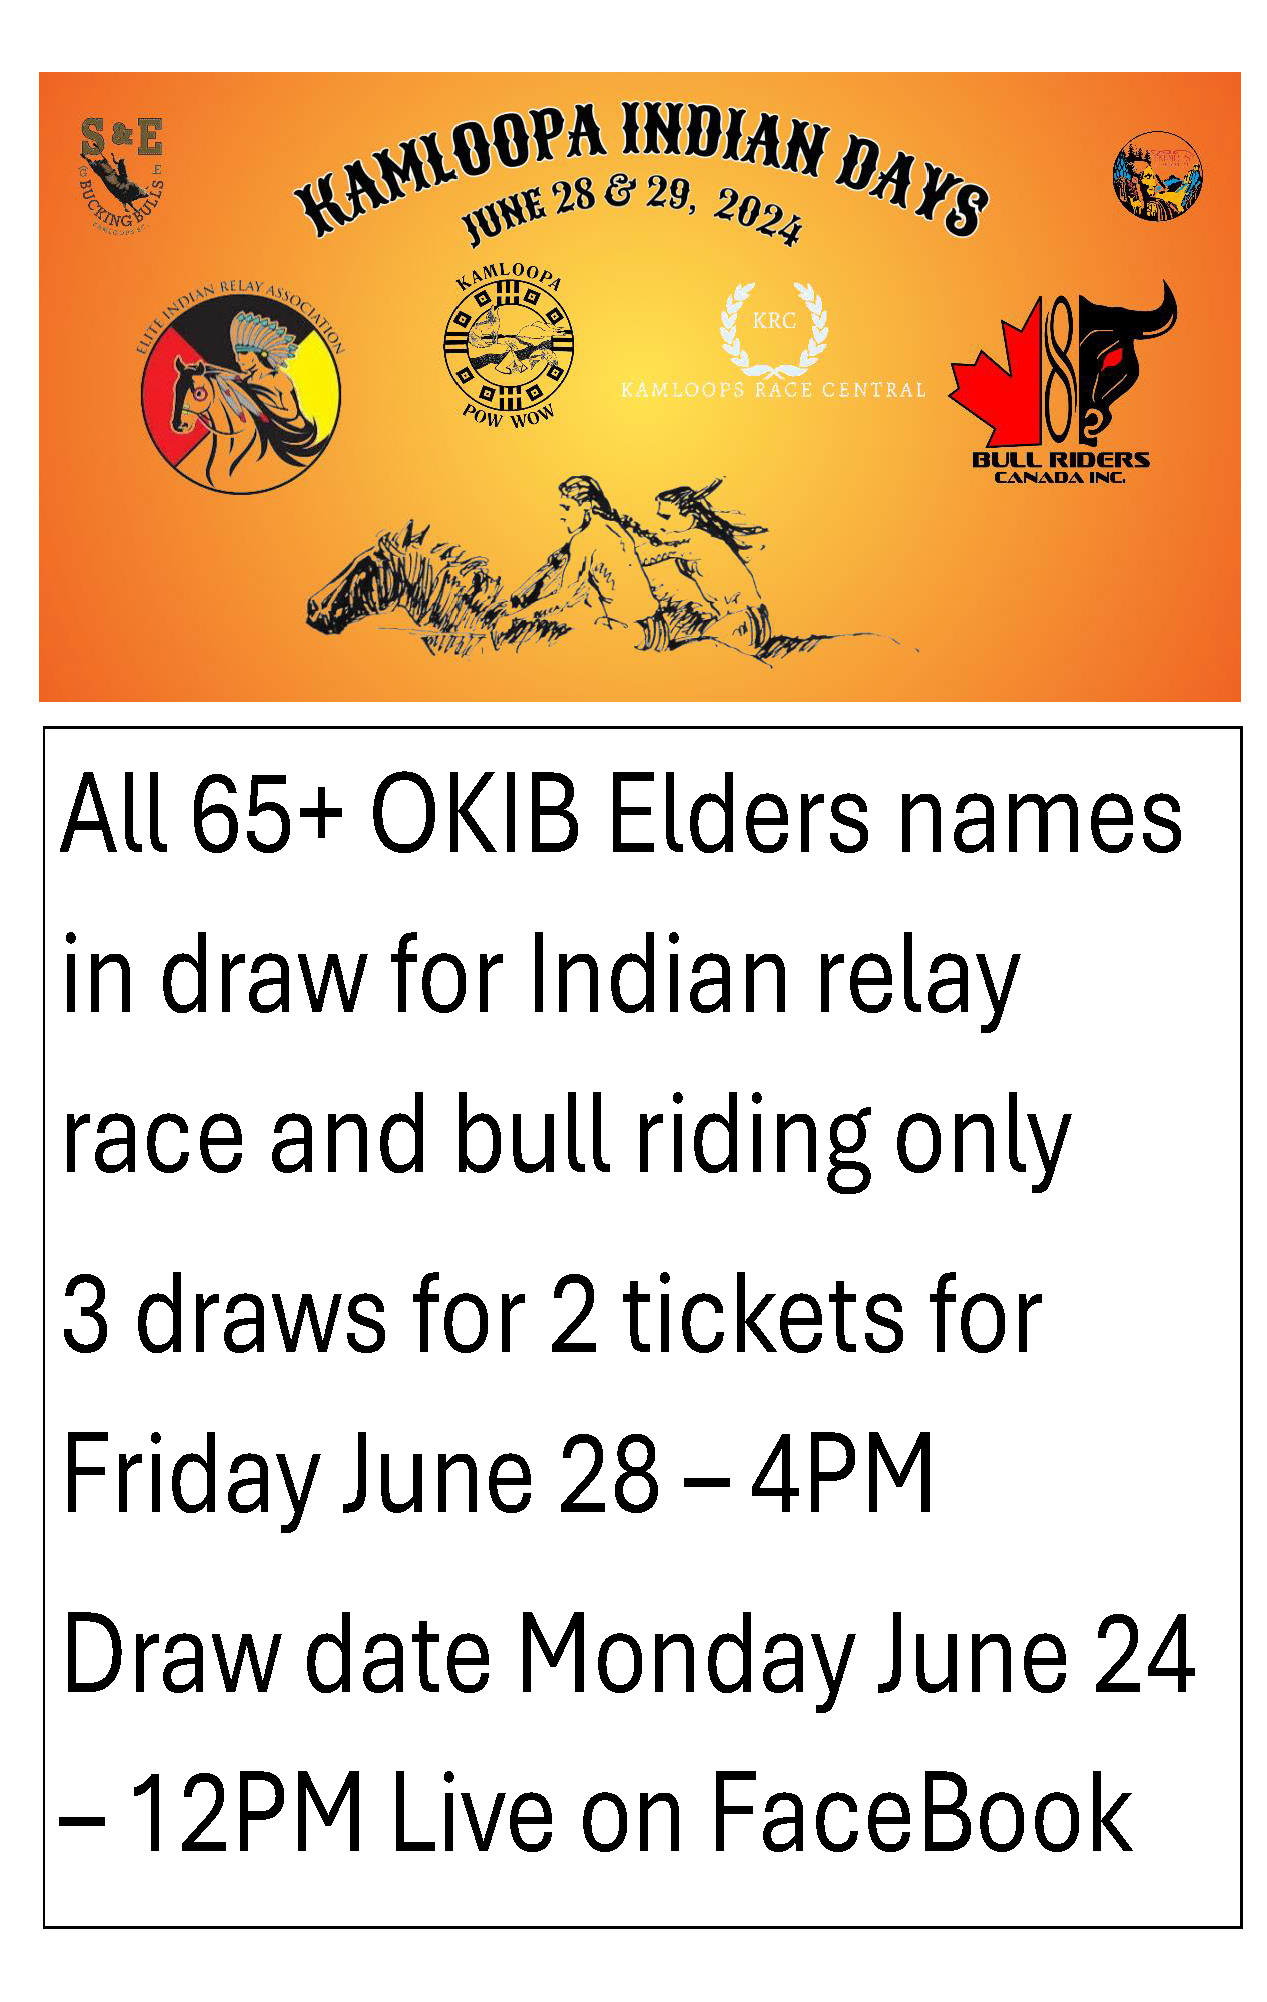 OKIB Elders Kamloopa ticket draw